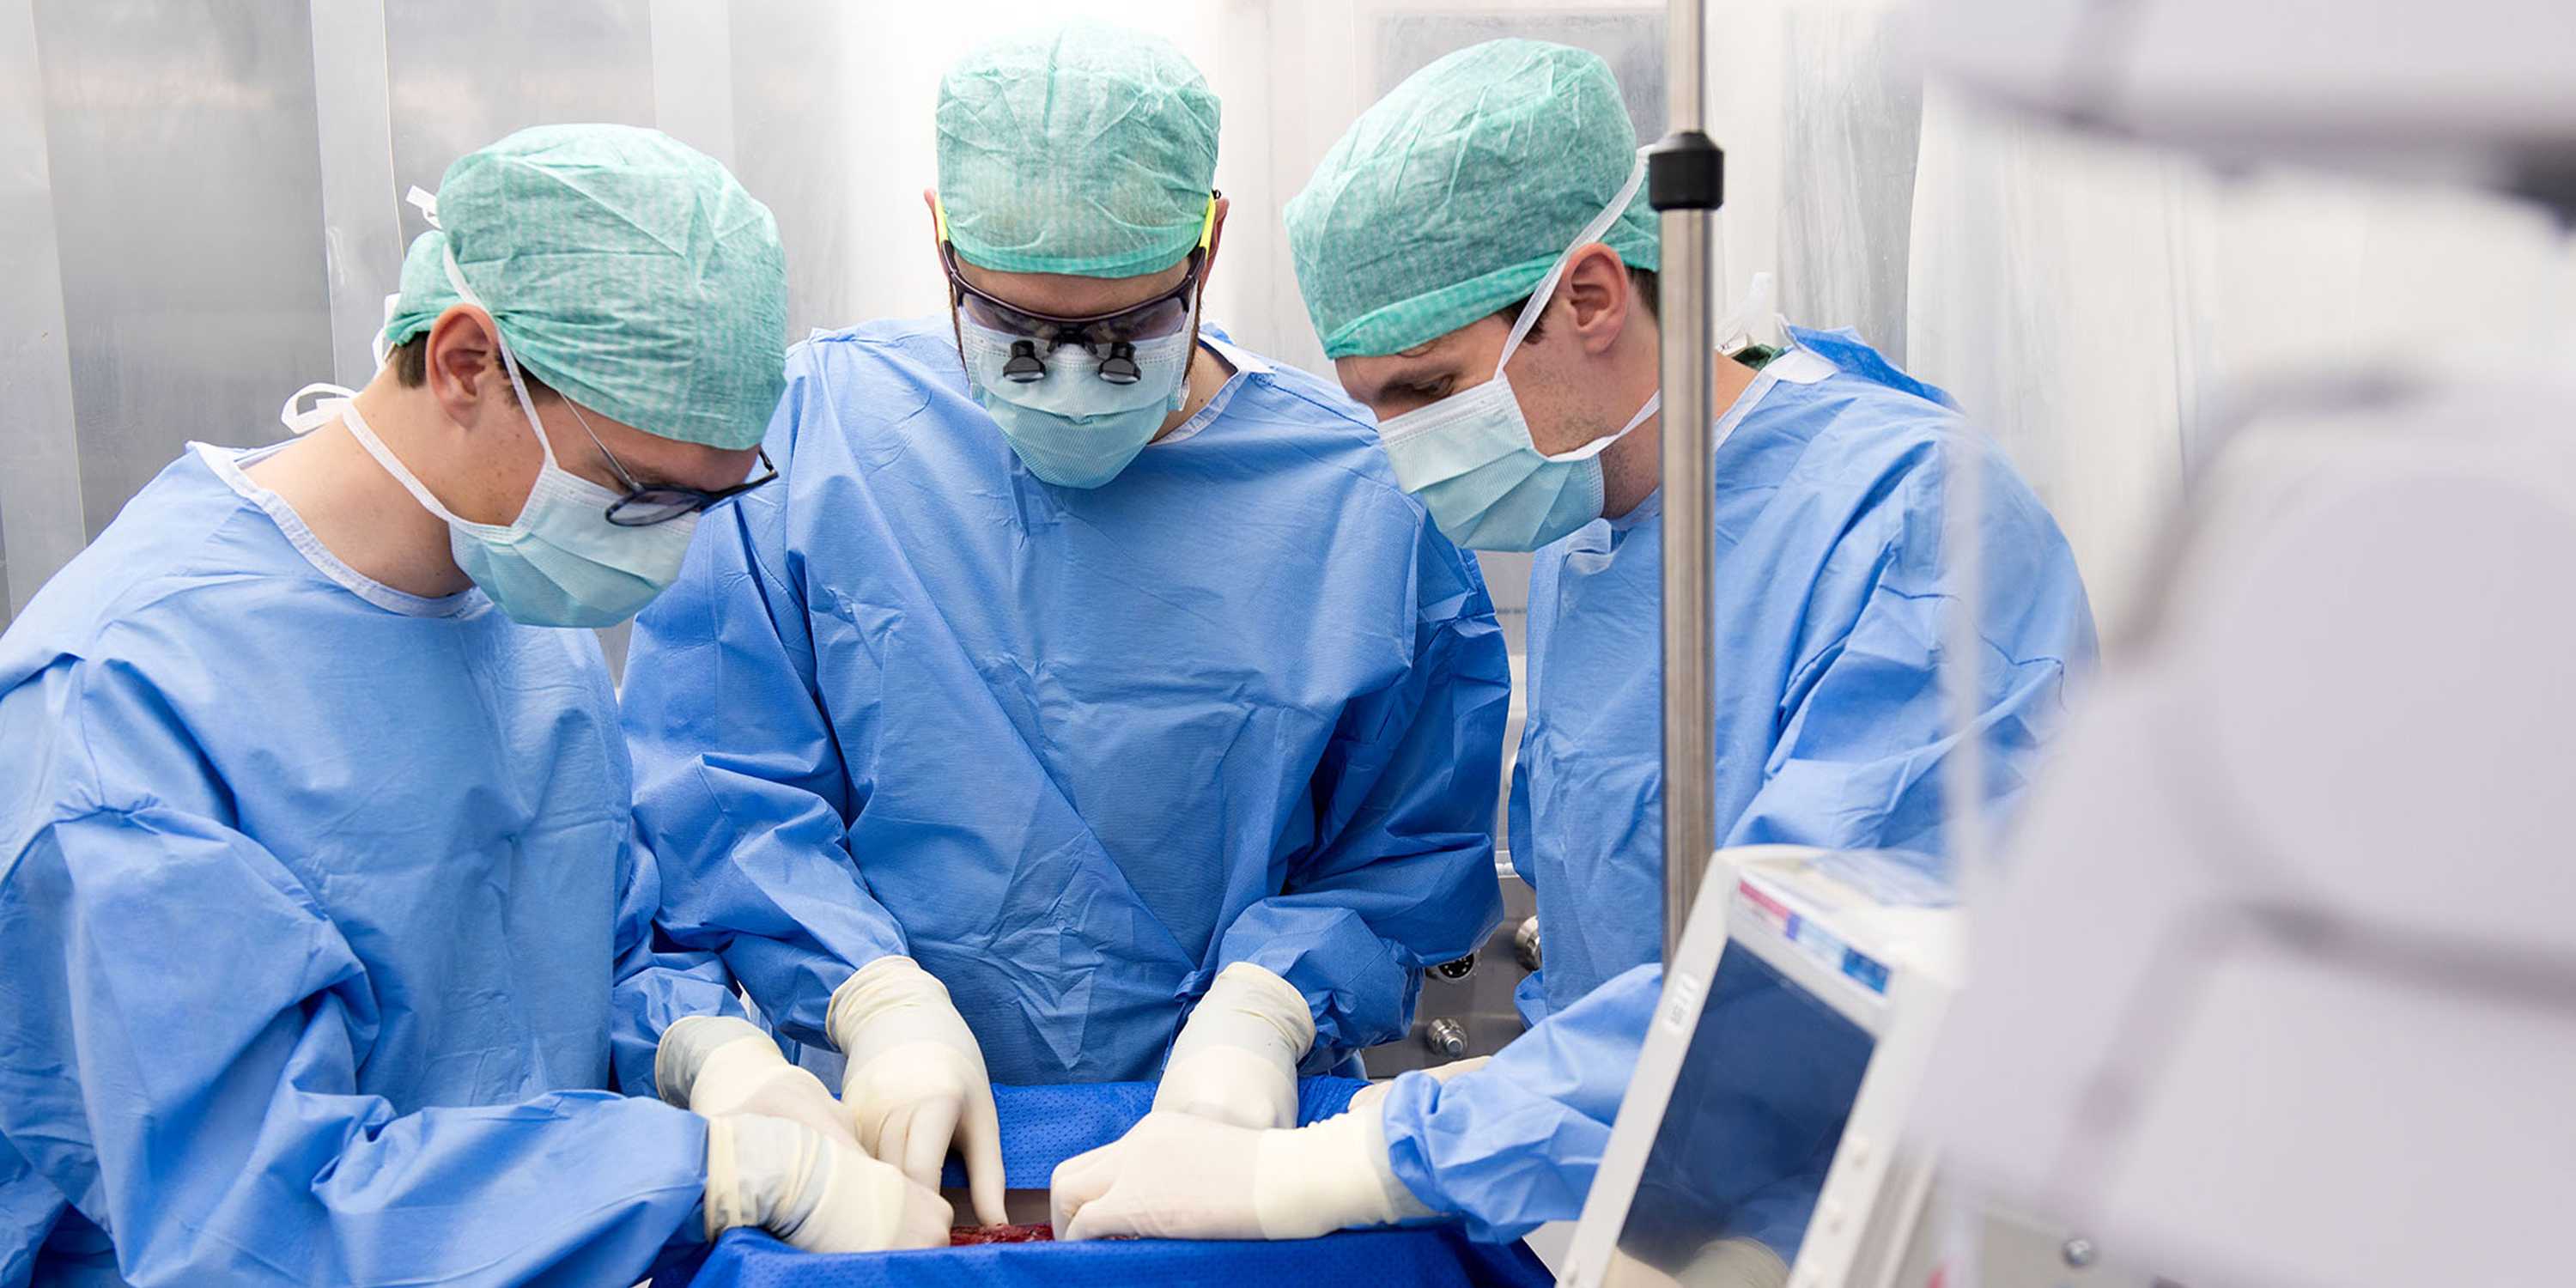 3 Chirurg:innen sind über die Perfusionsmaschine gebeugt